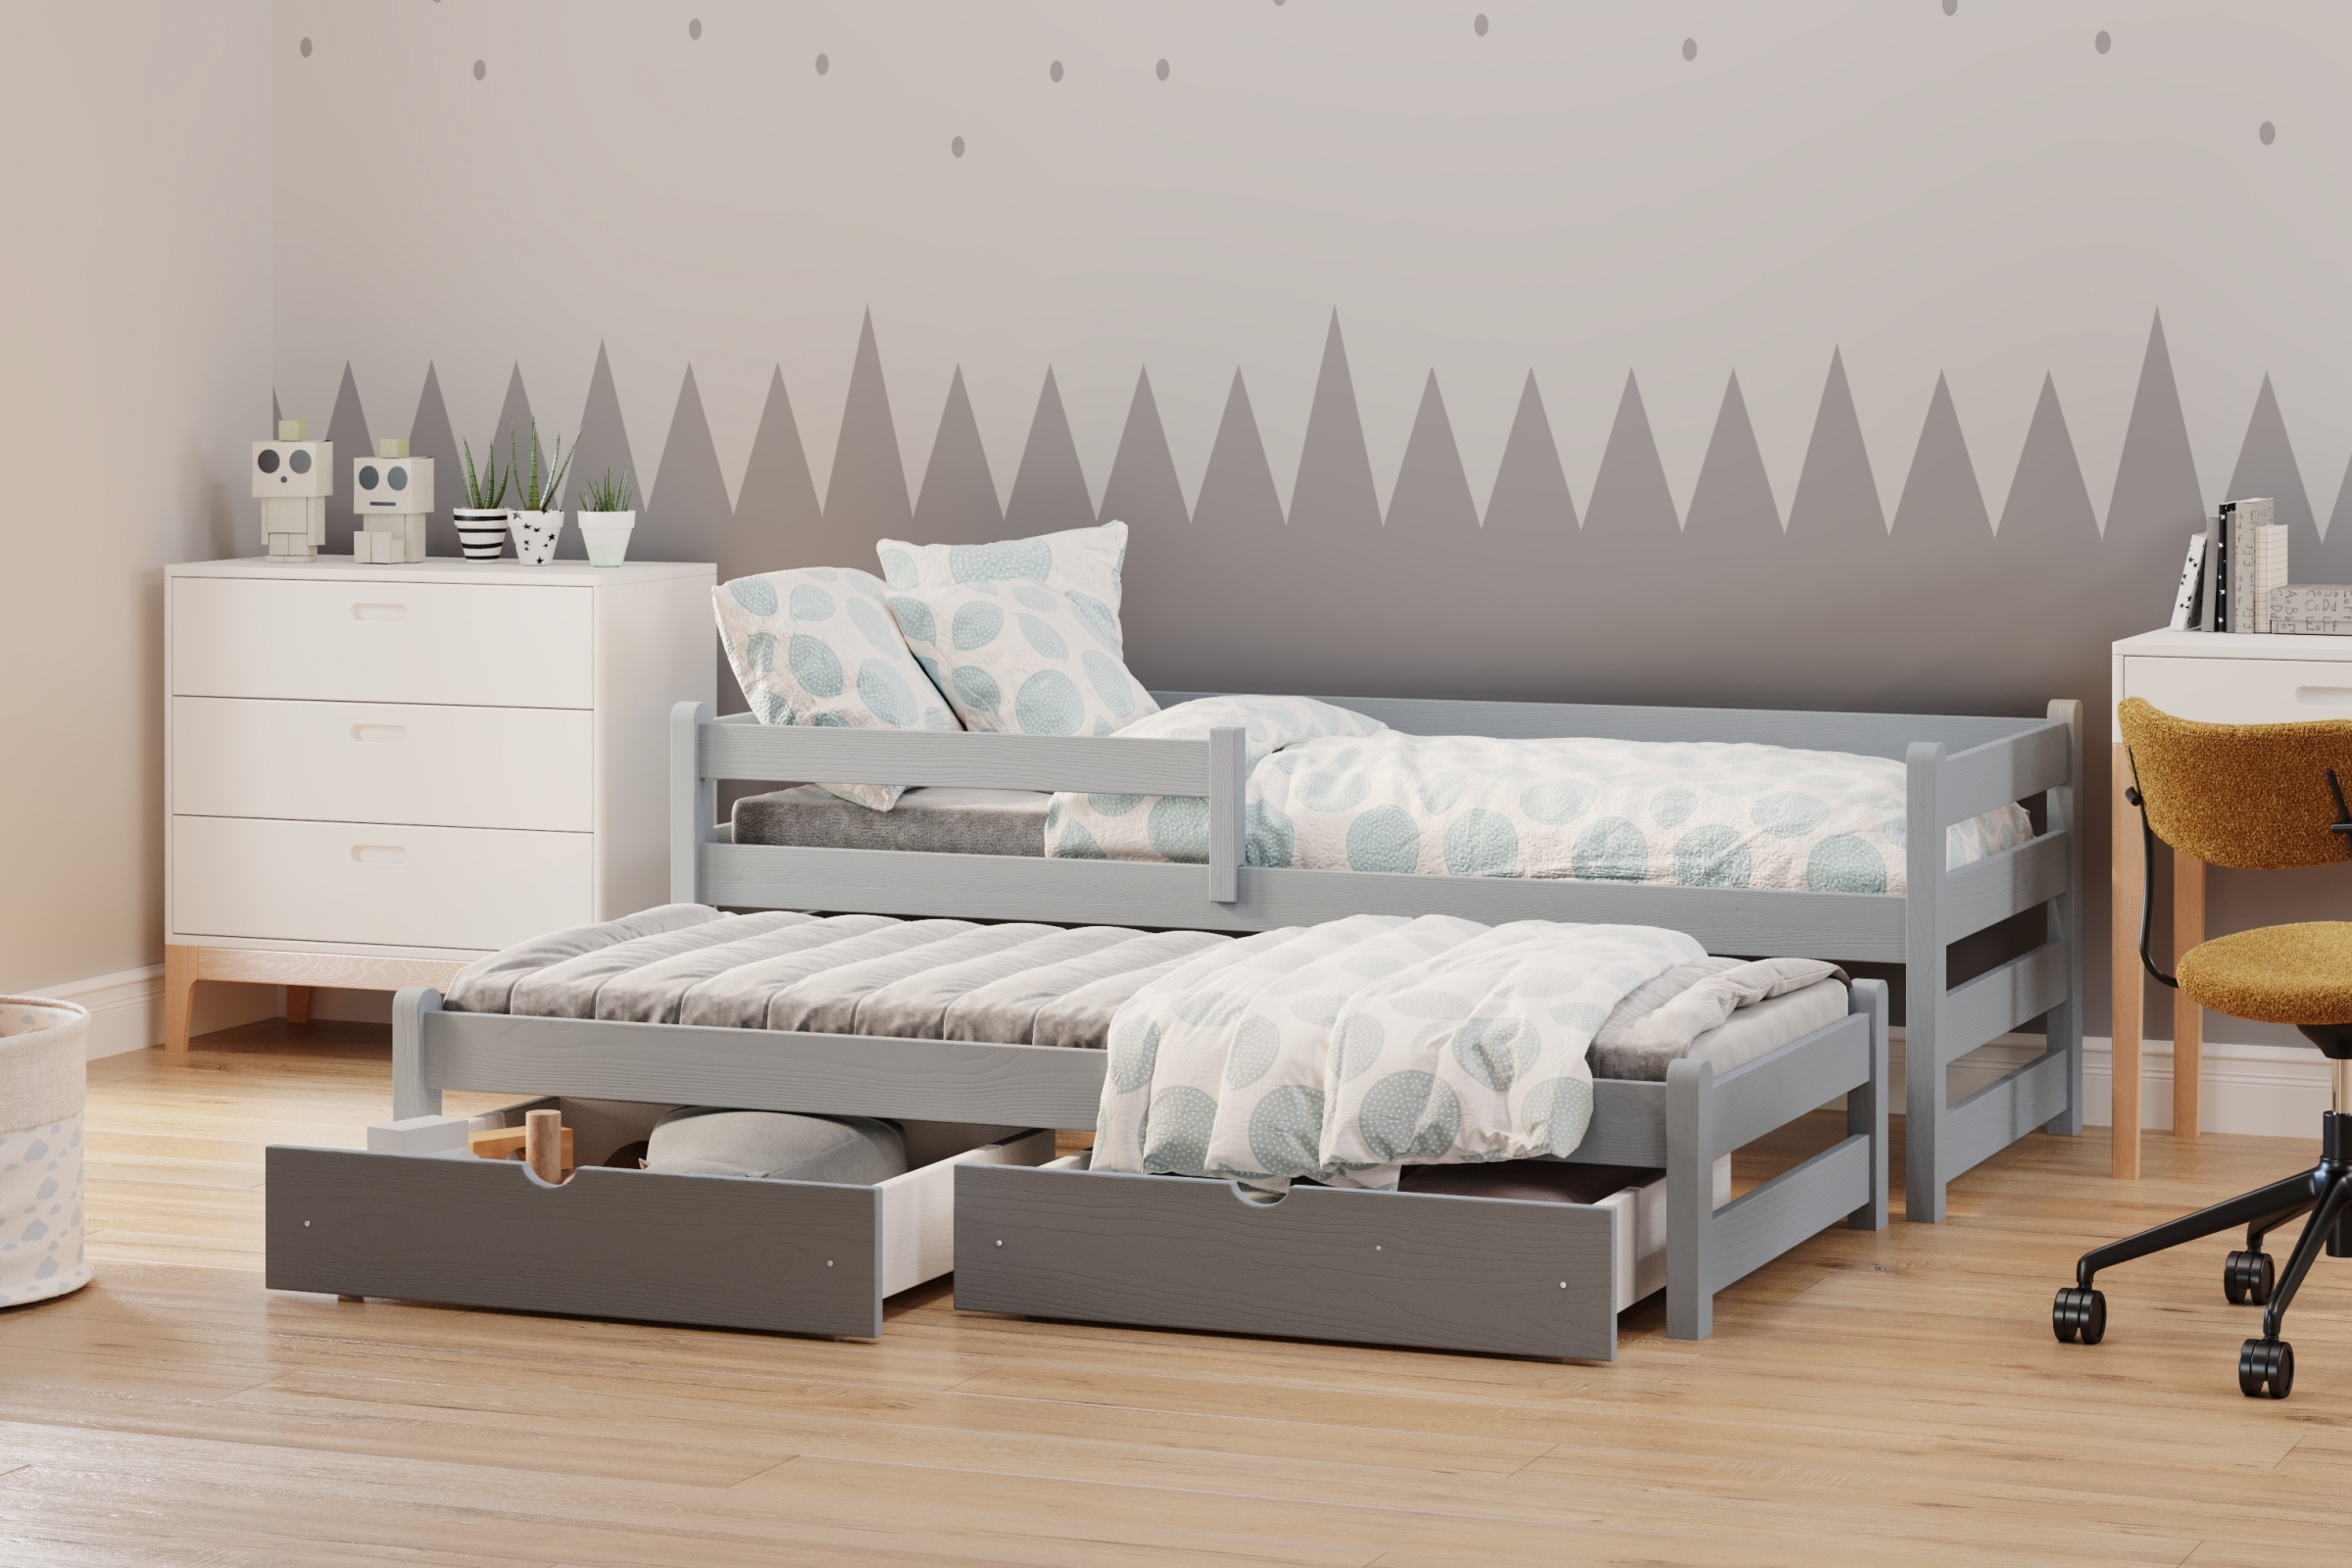 postel dětské přízemní výsuvná Alis DPV 001 - šedý, 80x160 postel přízemní výsuvná Alis - Barva šedý - aranzacja